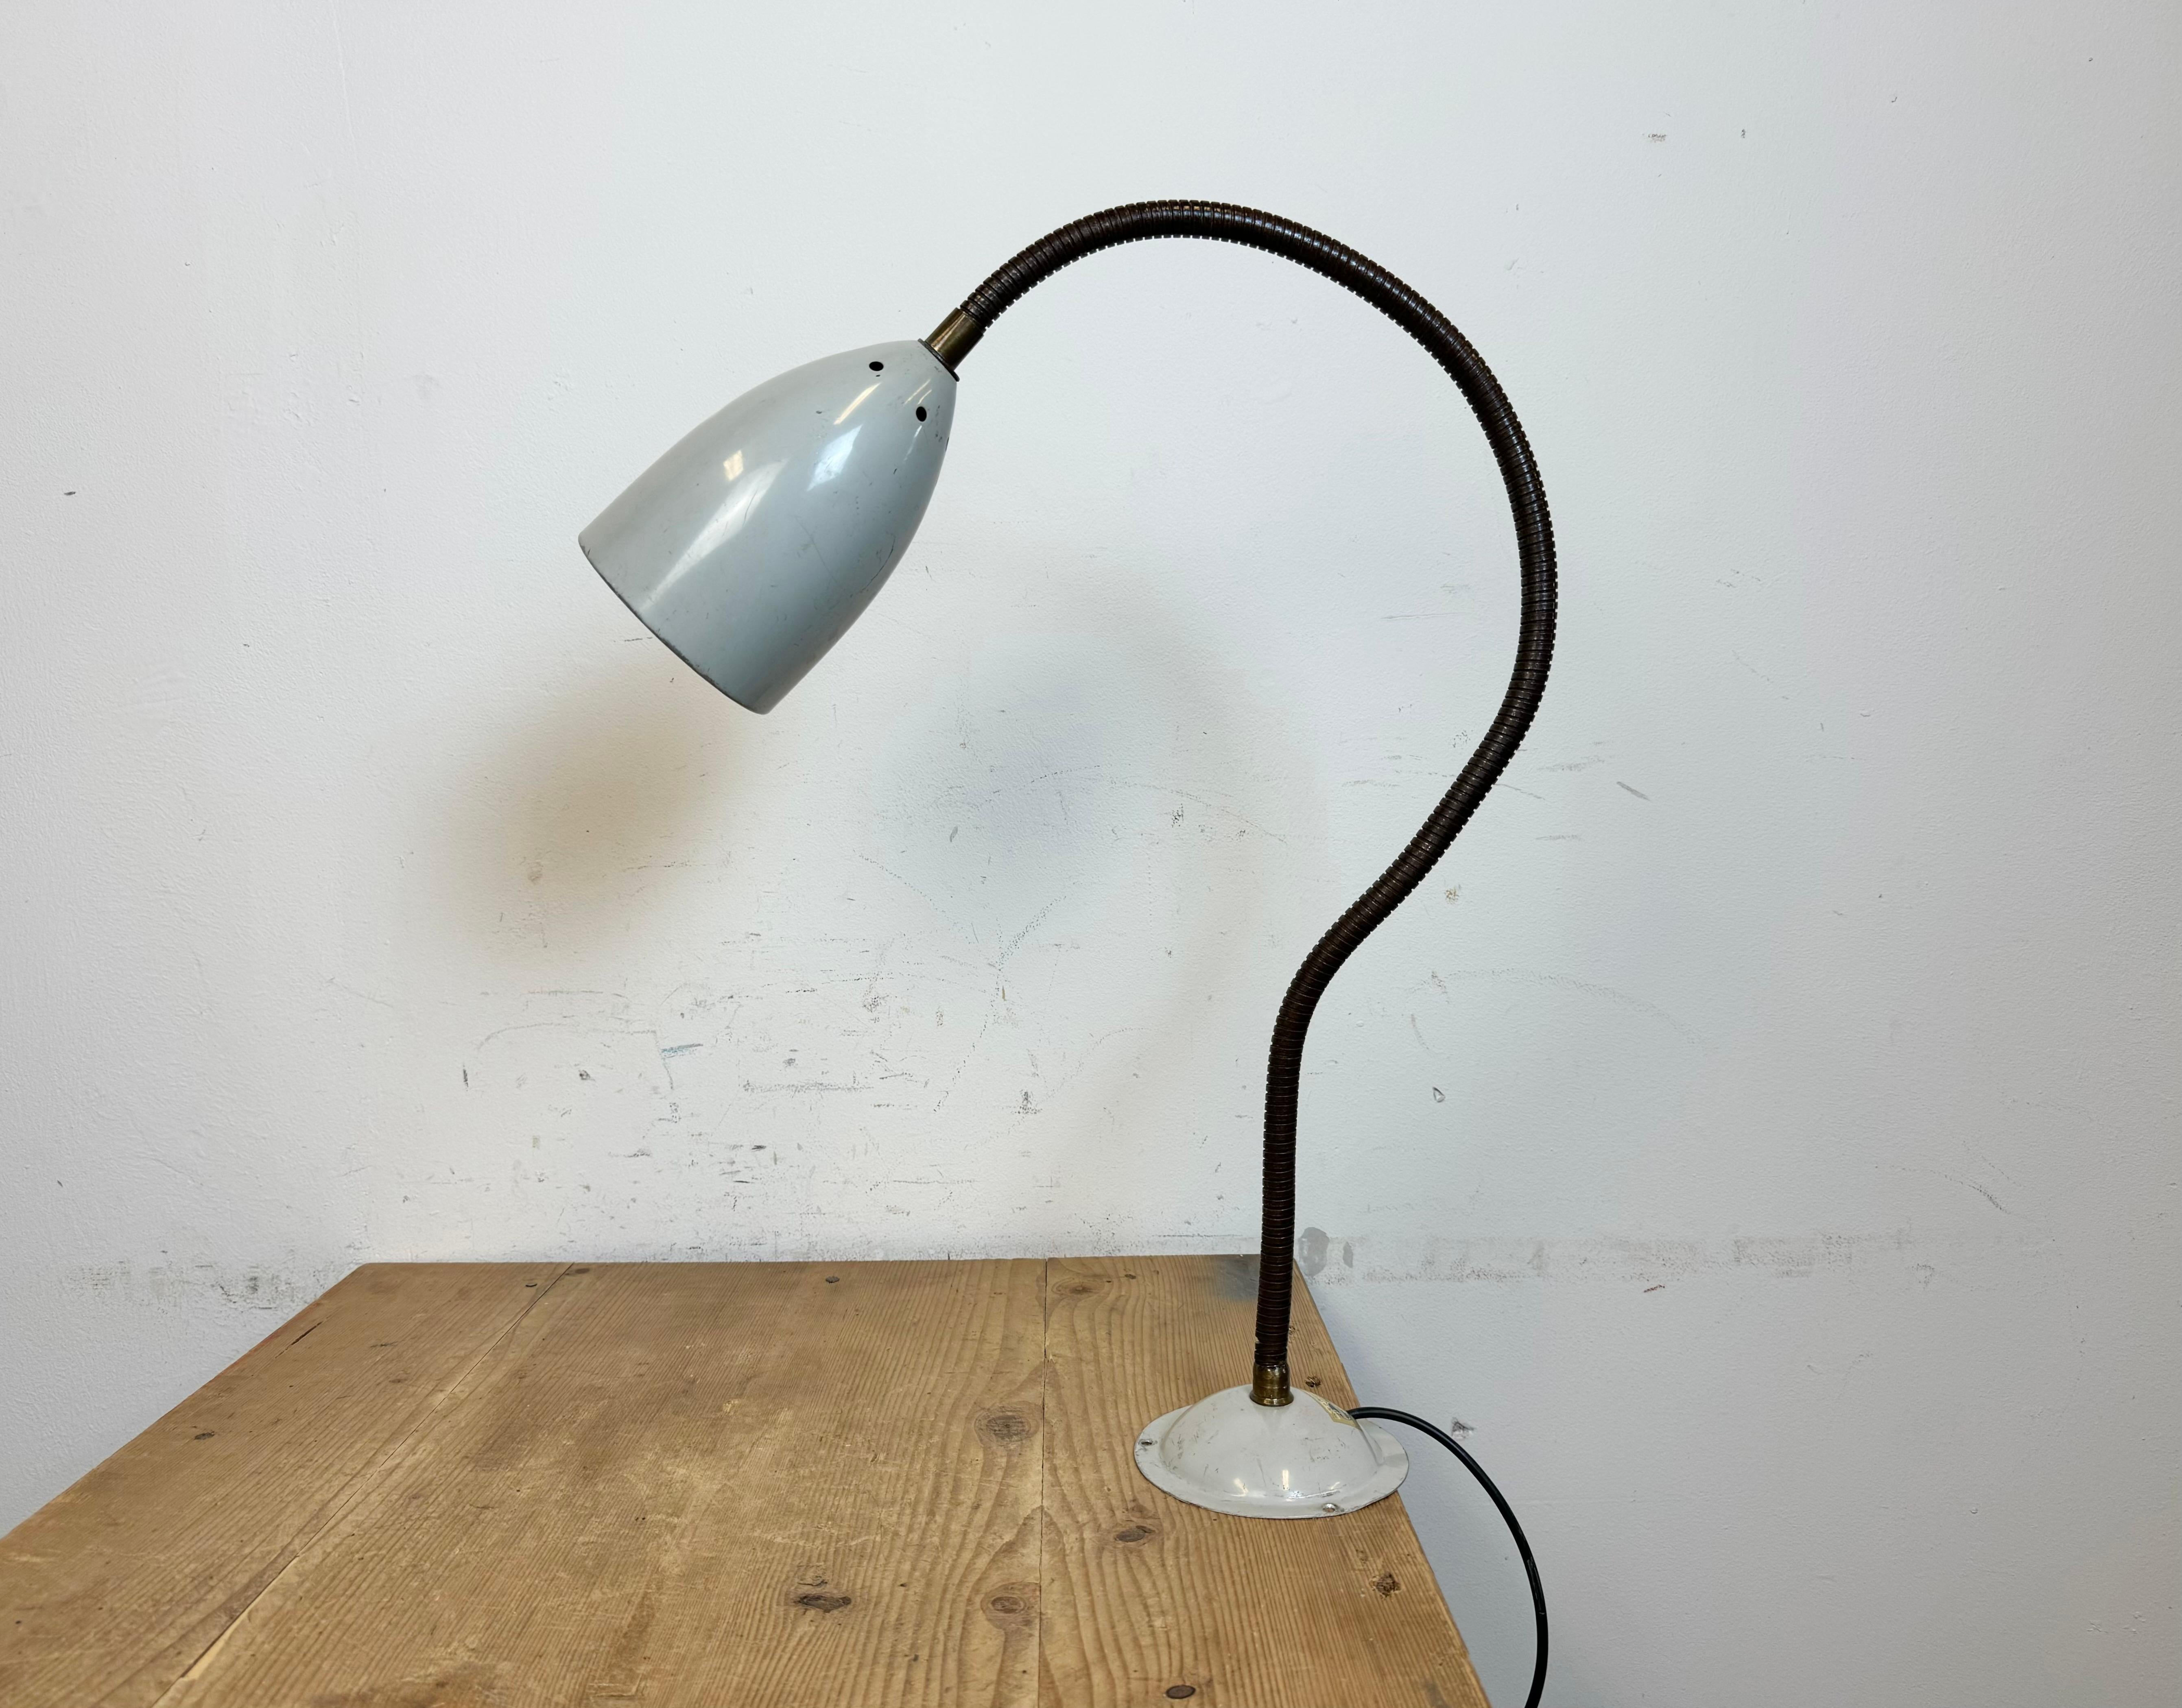 Lampe d'atelier industrielle réglable fabriquée par Philips en Belgique dans les années 1960. Elle se caractérise par une base et un abat-jour en métal gris et un col de cygne en fer. La douille d'origine nécessite des ampoules standard E27/E26.
Le